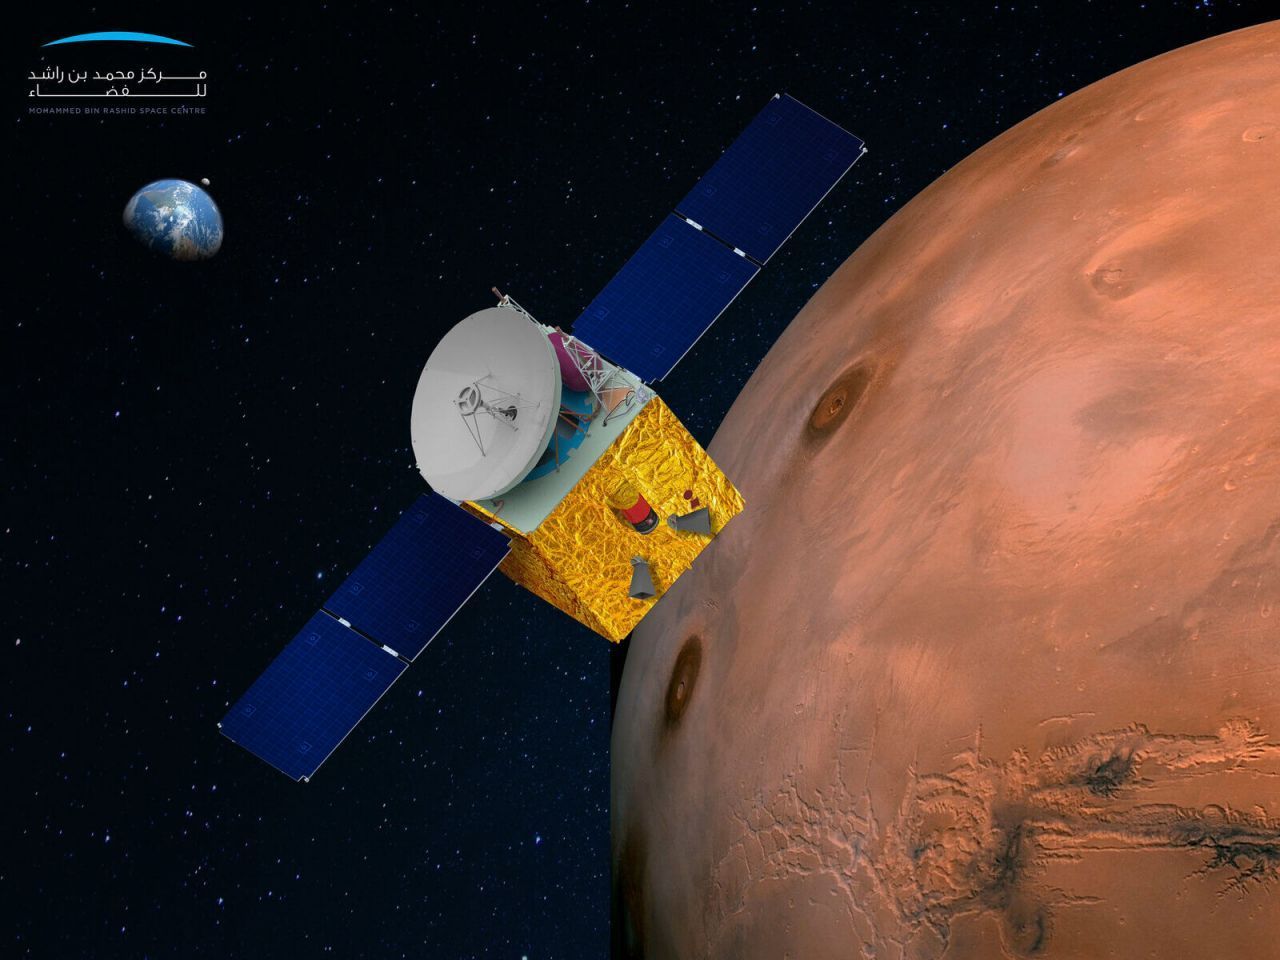 Die Sonde fliegt so hoch um den Mars (über 20.000 Kilometer), dass sie den gesamten Planeten und sein Wetter im Blick hat ...